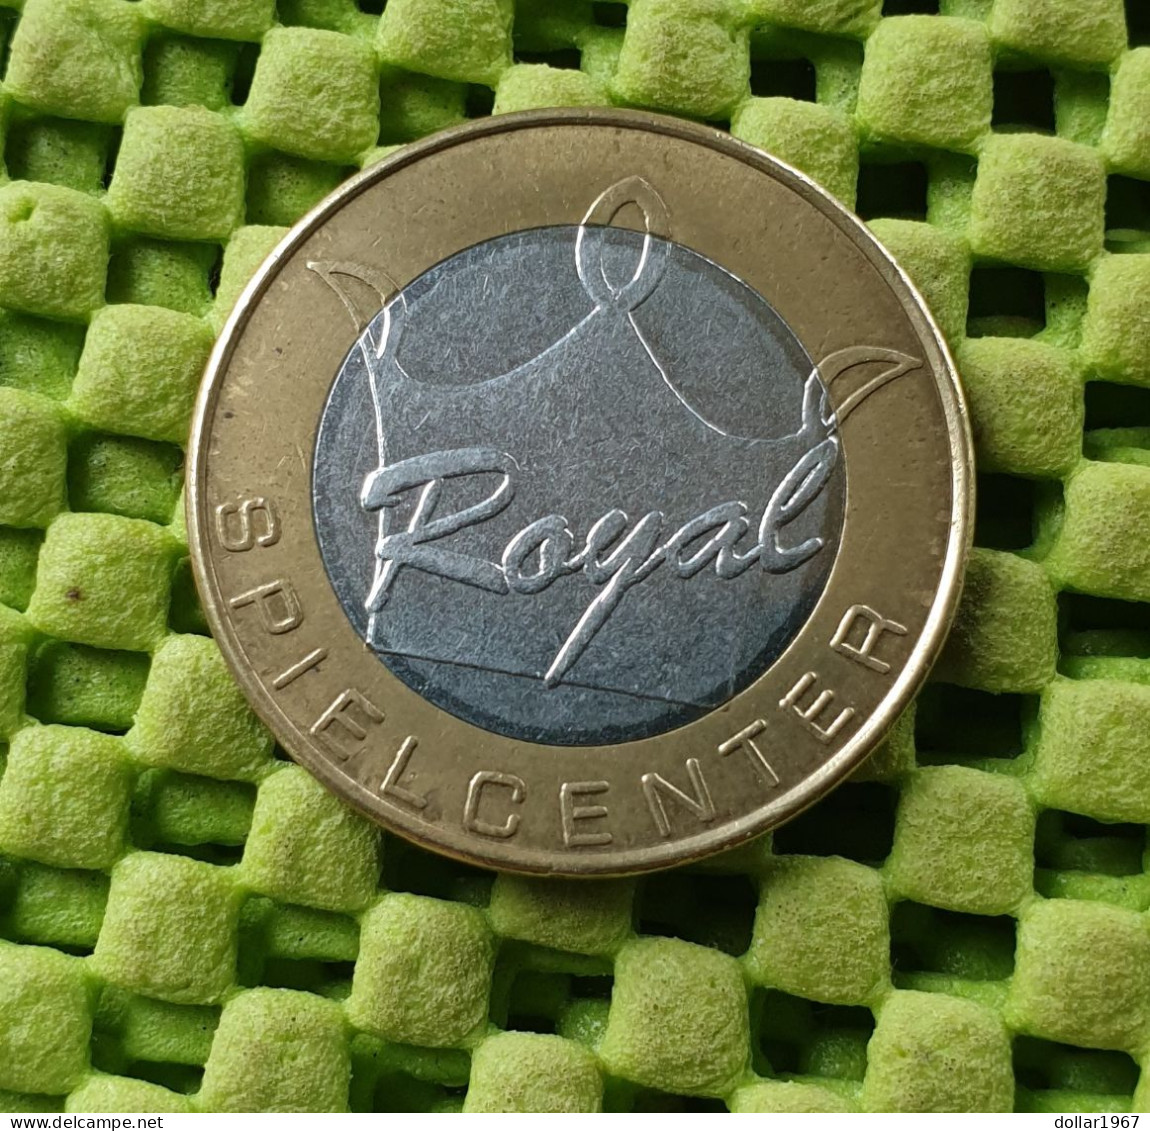 Munt / Minze / Mint - Royal Spielcenter - Weterspielmarke -  Original Foto  !!  Medallion  Deutschland - Casino